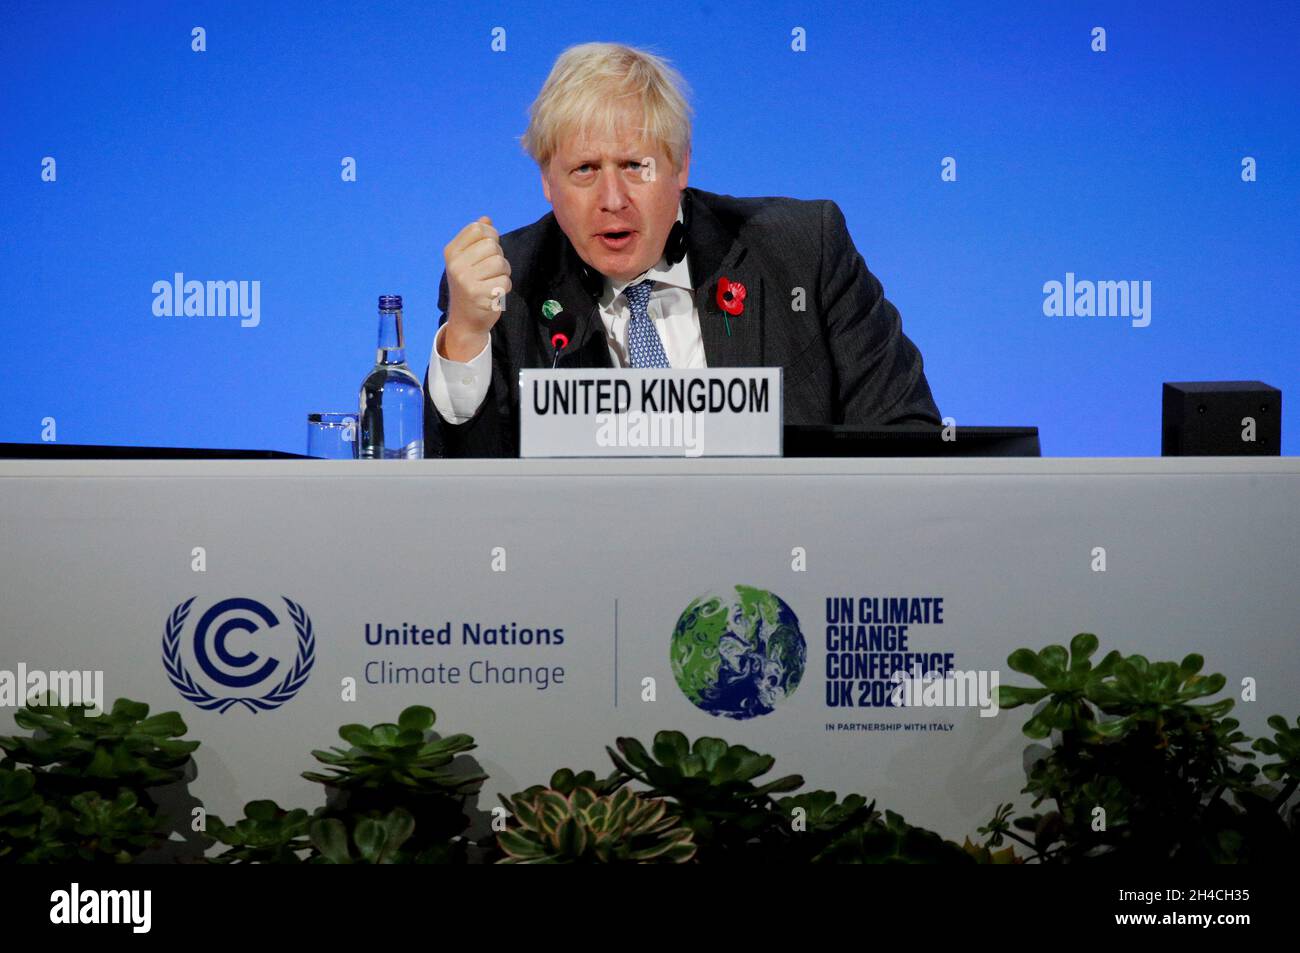 Premierminister Boris Johnson ist Mitvorsitzender einer Veranstaltung zwischen Großbritannien und Indien, bei der der Fonds der Koalition für die widerstandsfähige Infrastruktur der kleinen Inselentwicklungsstaaten im Rahmen des Cop26-Gipfels auf dem Scottish Event Campus (SEC) in Glasgow ins Leben gerufenwurde. Bilddatum: Dienstag, 2. November 2021. Stockfoto